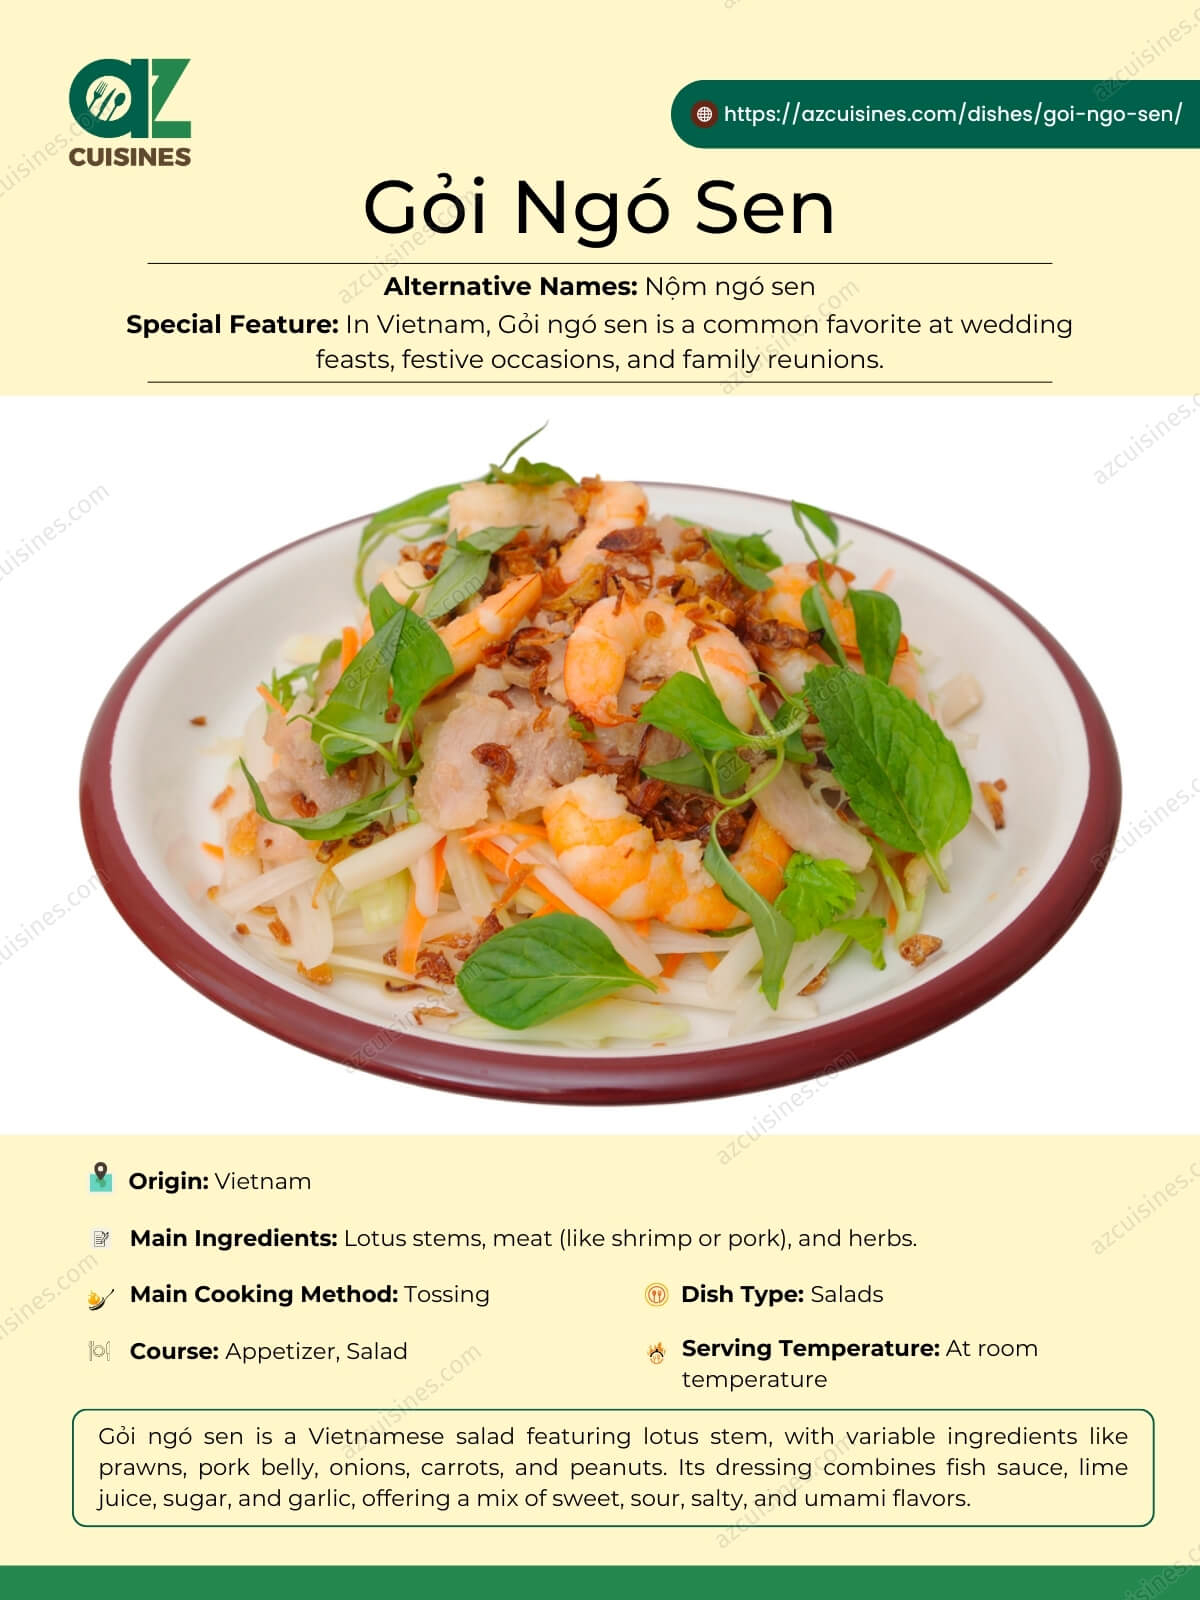 Goi Ngo Sen Overview